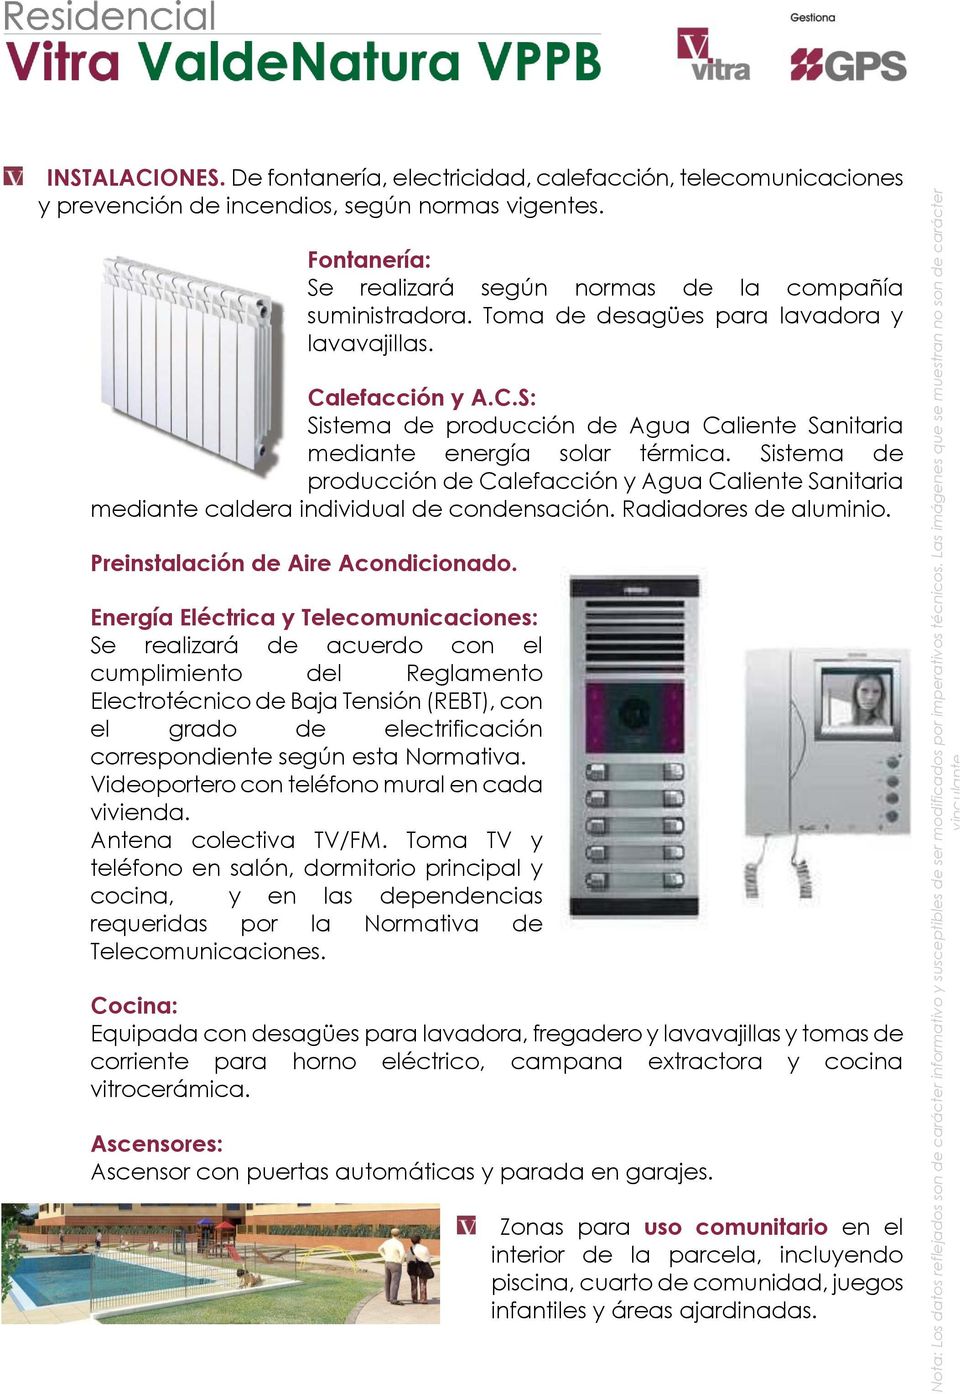 Sistema de producción de Calefacción y Agua Caliente Sanitaria mediante caldera individual de condensación. Radiadores de aluminio. Preinstalación de Aire Acondicionado.